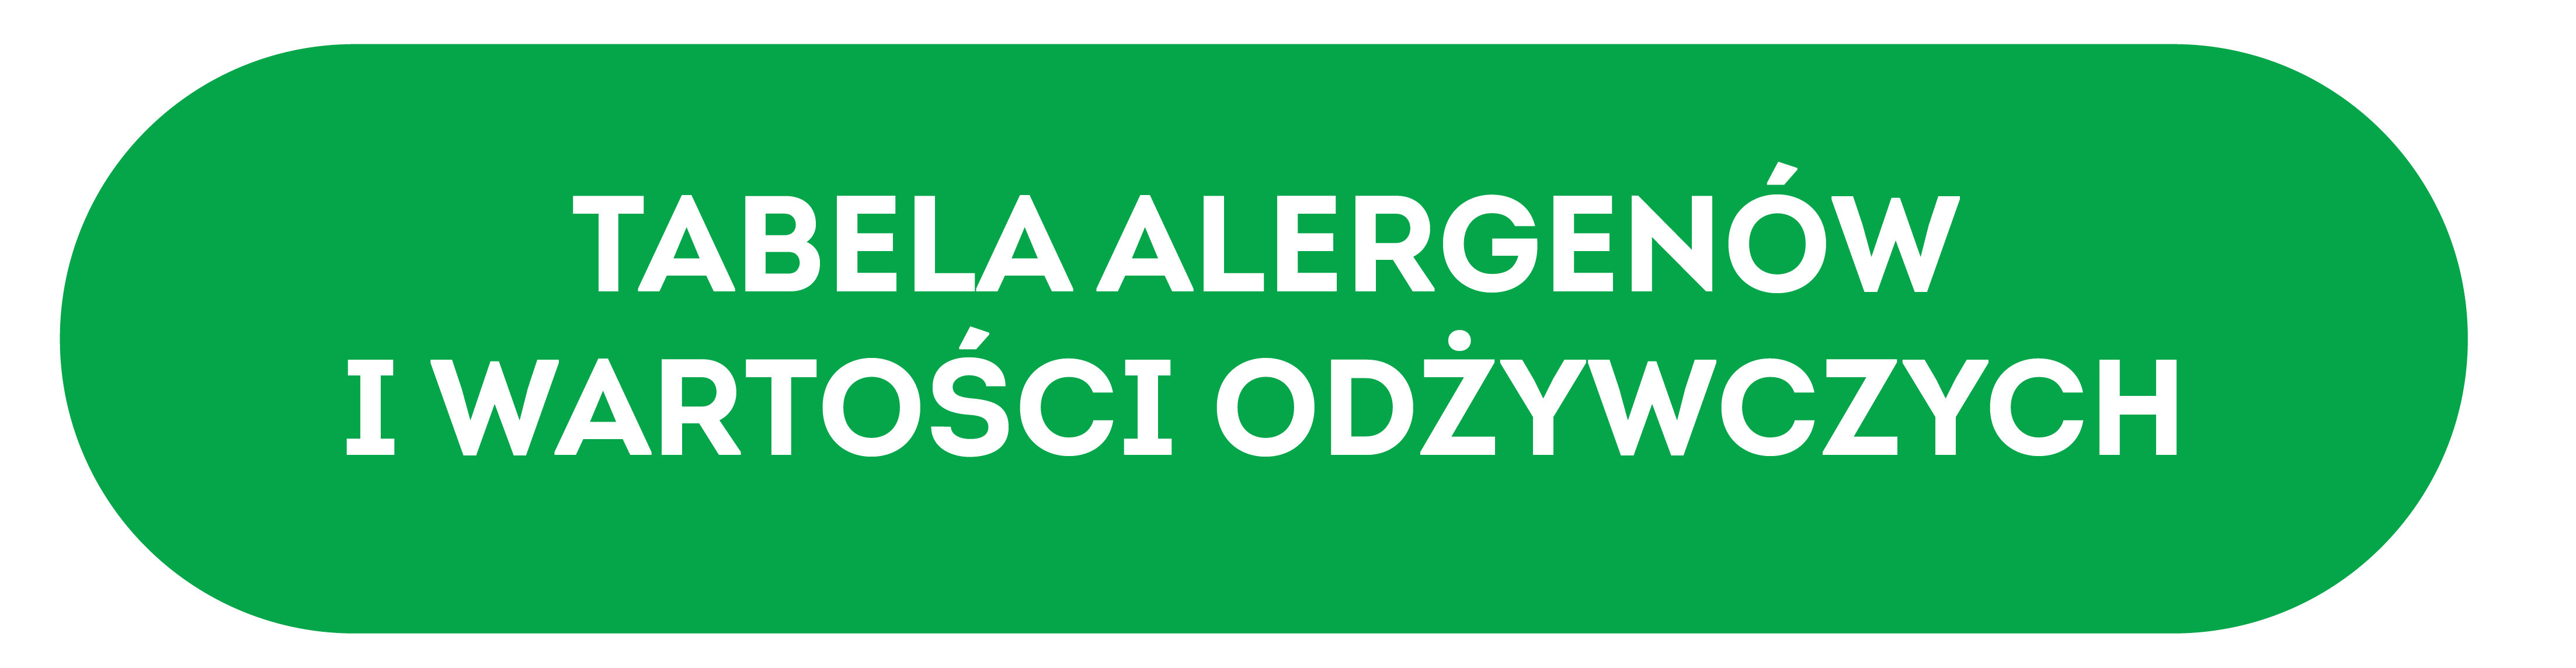 Zielony przycisk prowadzący do tabeli wartości odżywczych i alergenów